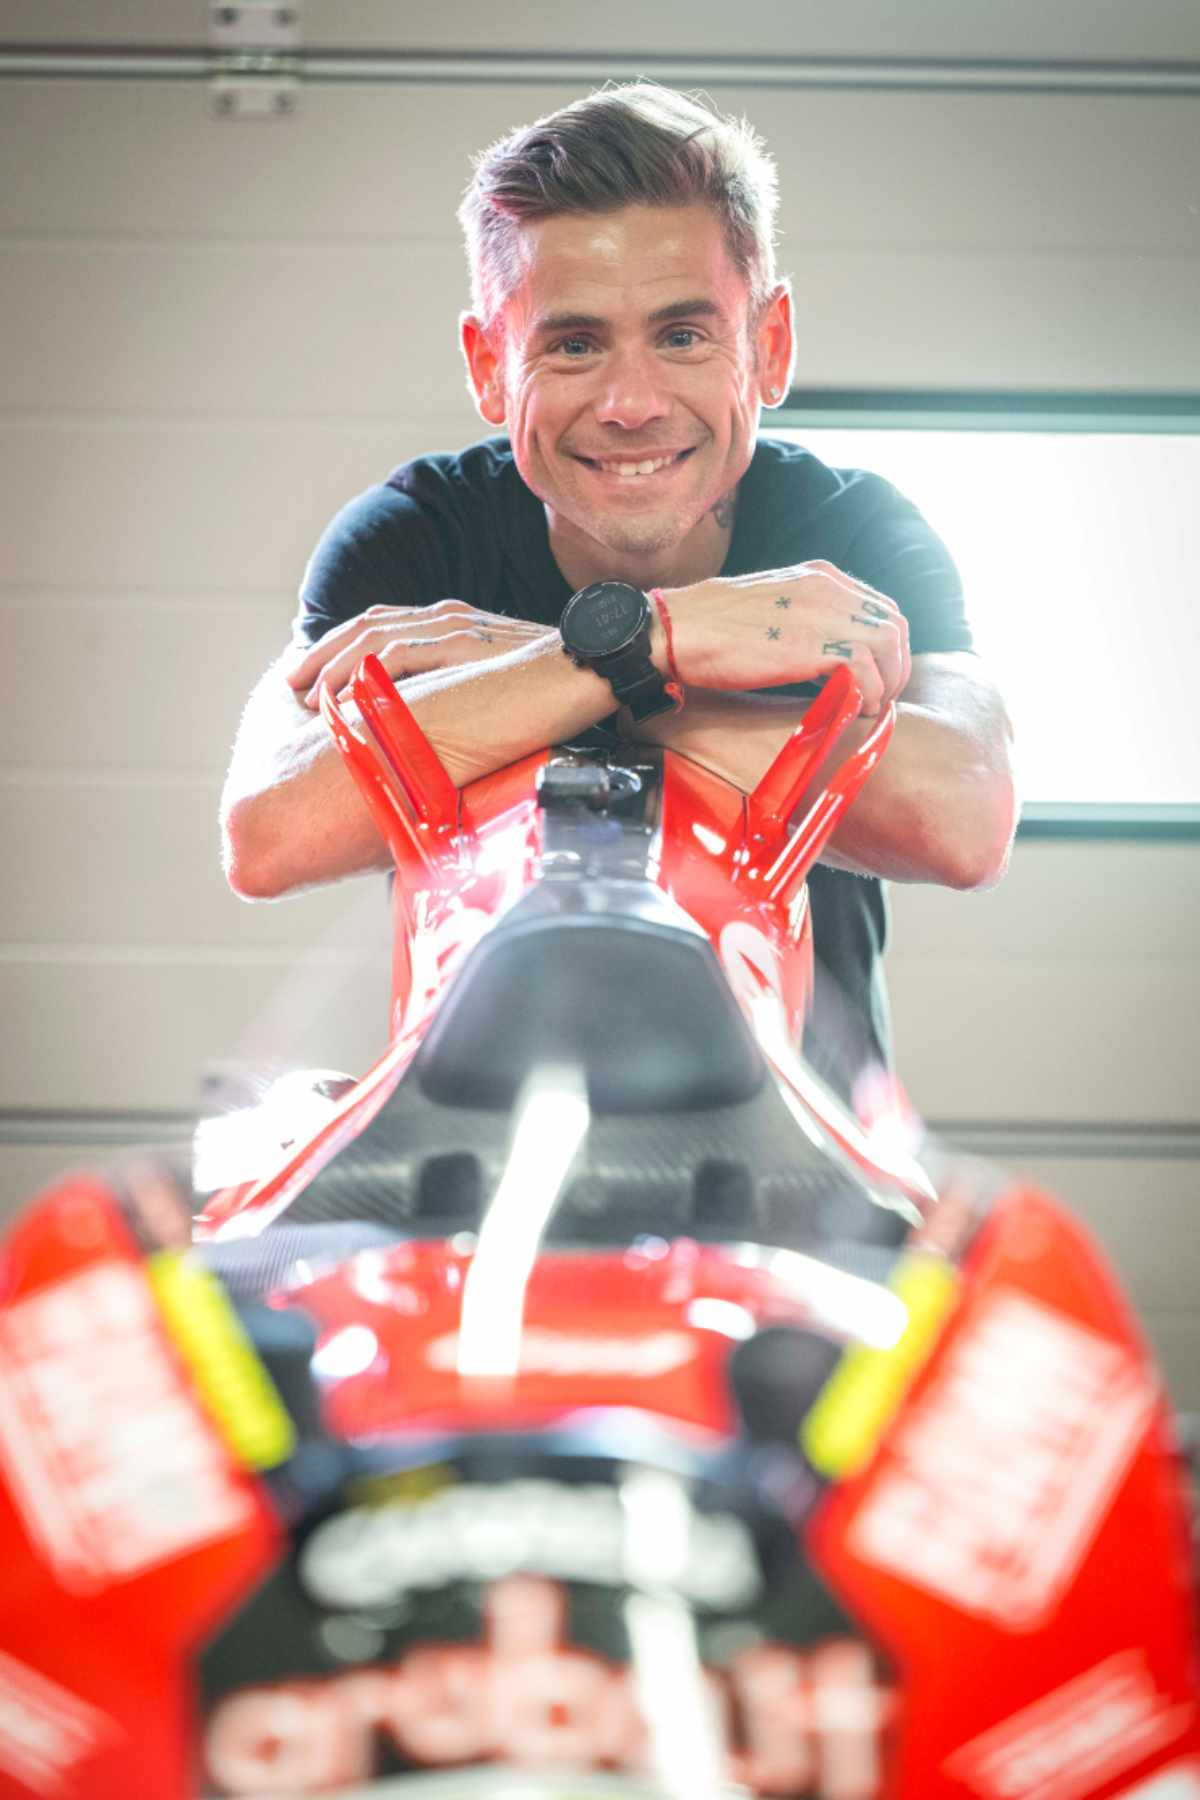 Alvaro Bautista testar Ducati MotoGP Misano